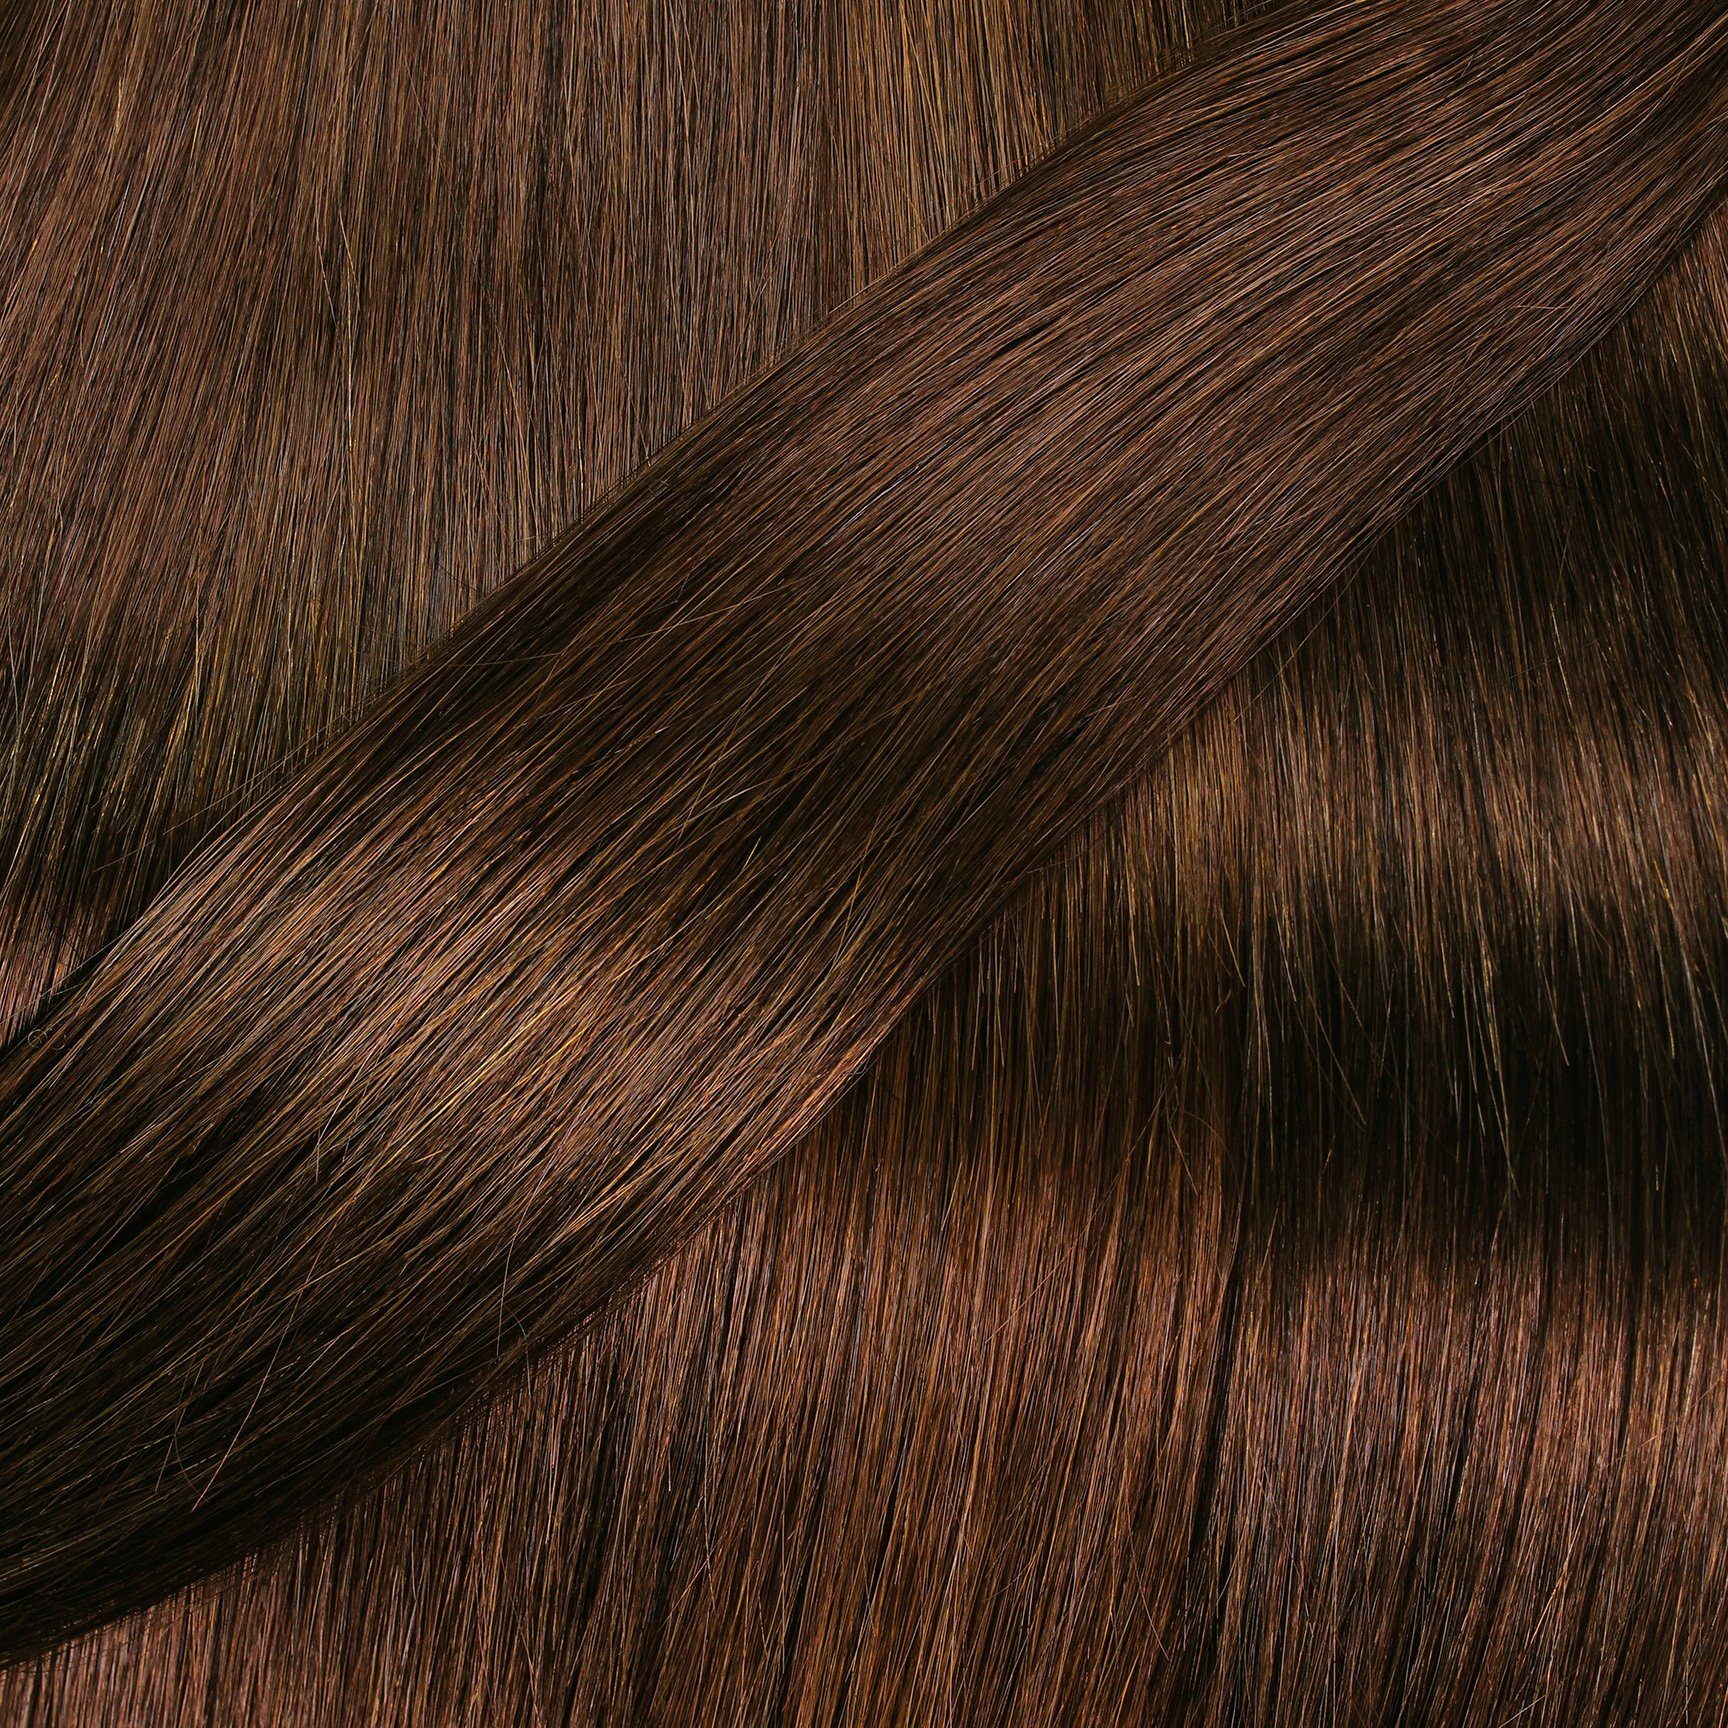 Echthaar-Extension Tape 40cm hair2heart gewellt Extensions Dunkelblond #6/3 Gold